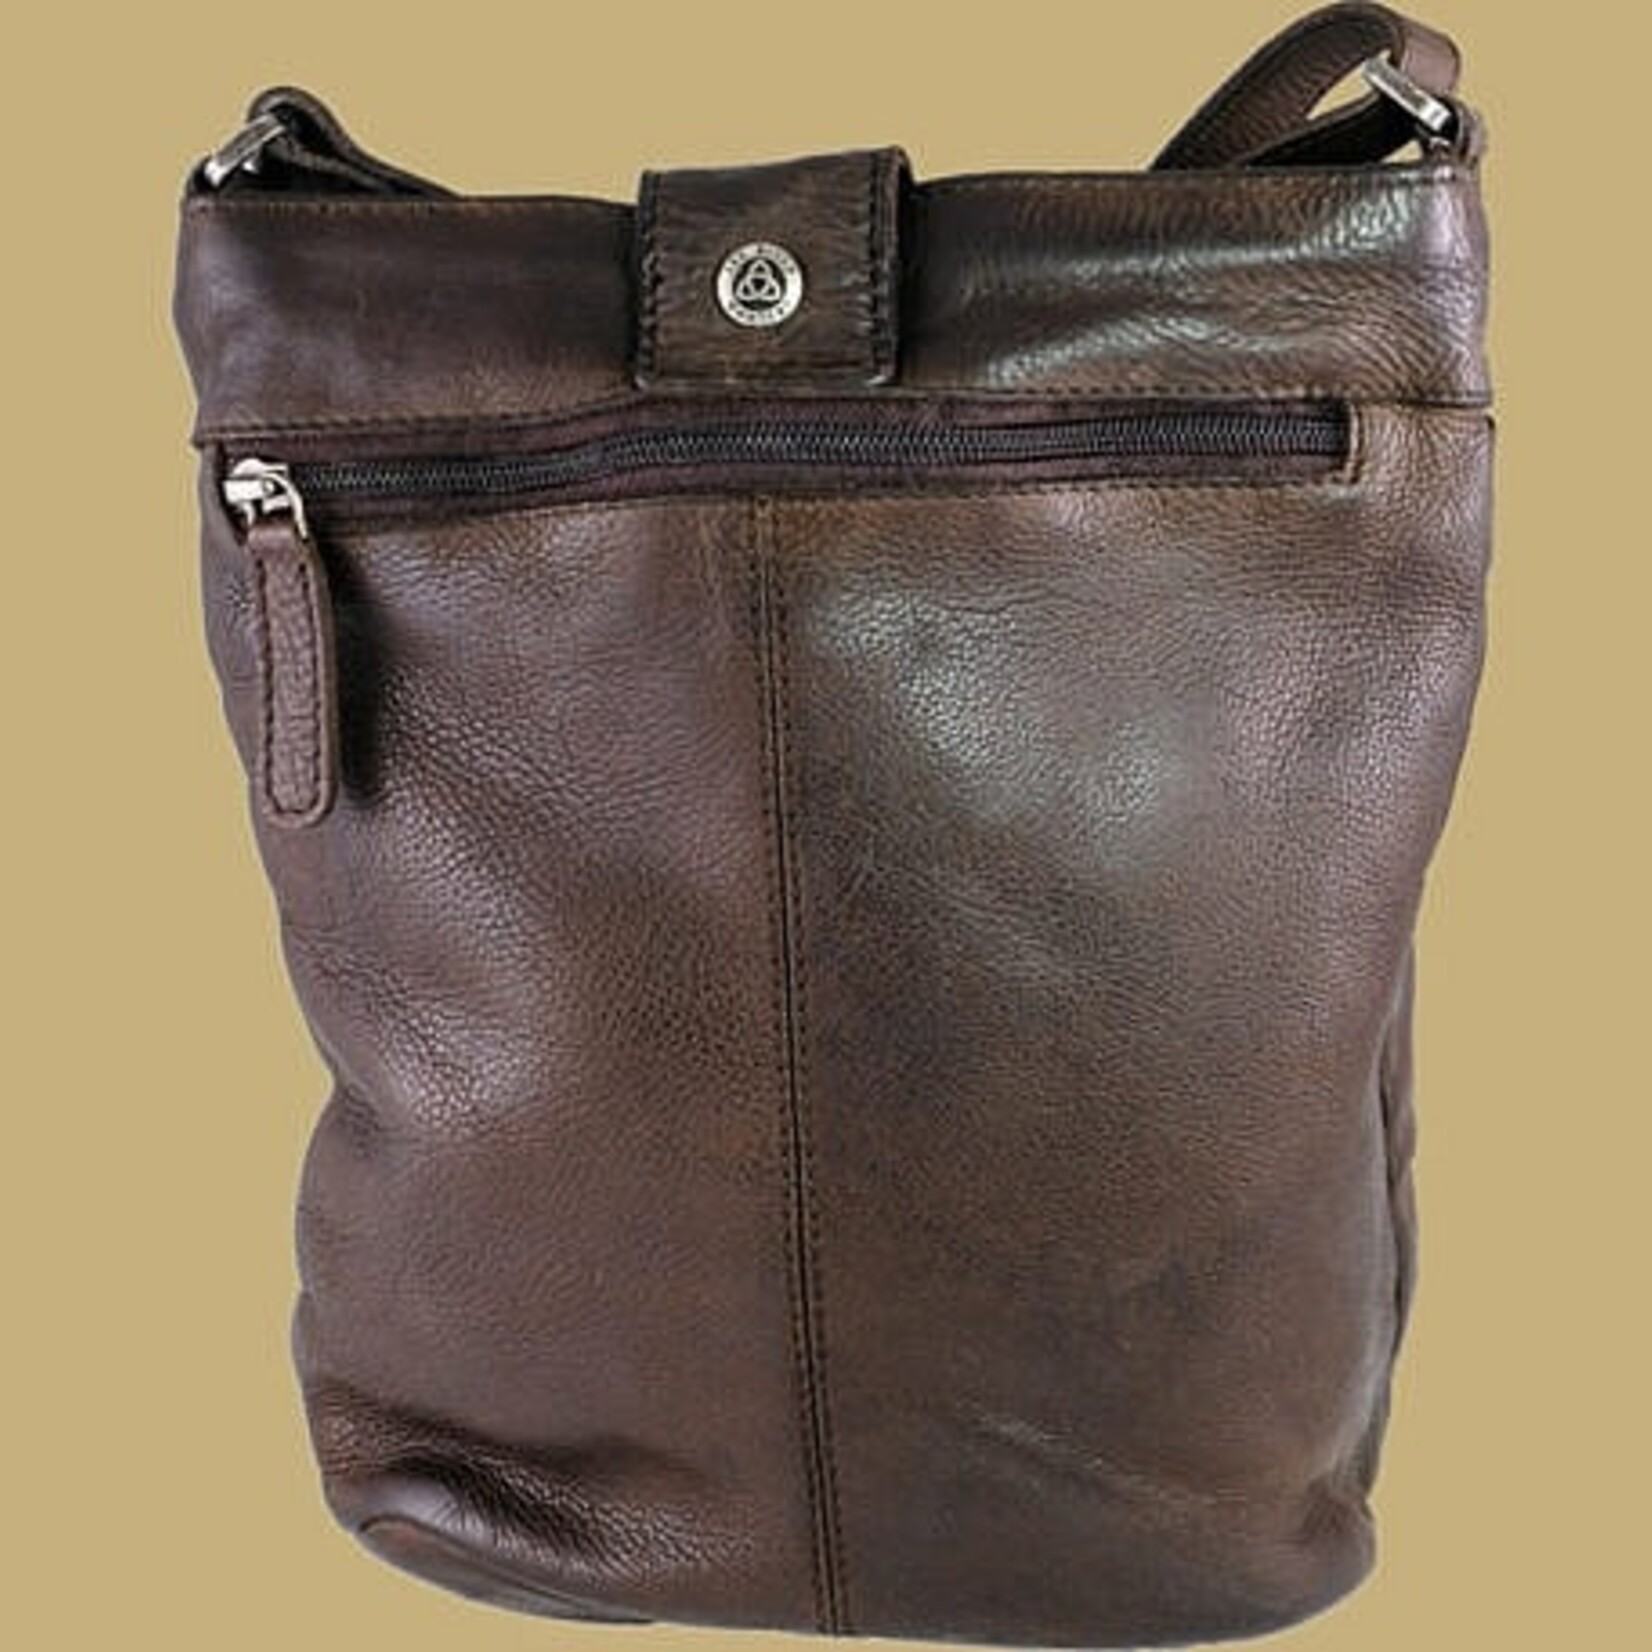 Lee River Torc Leather Bag